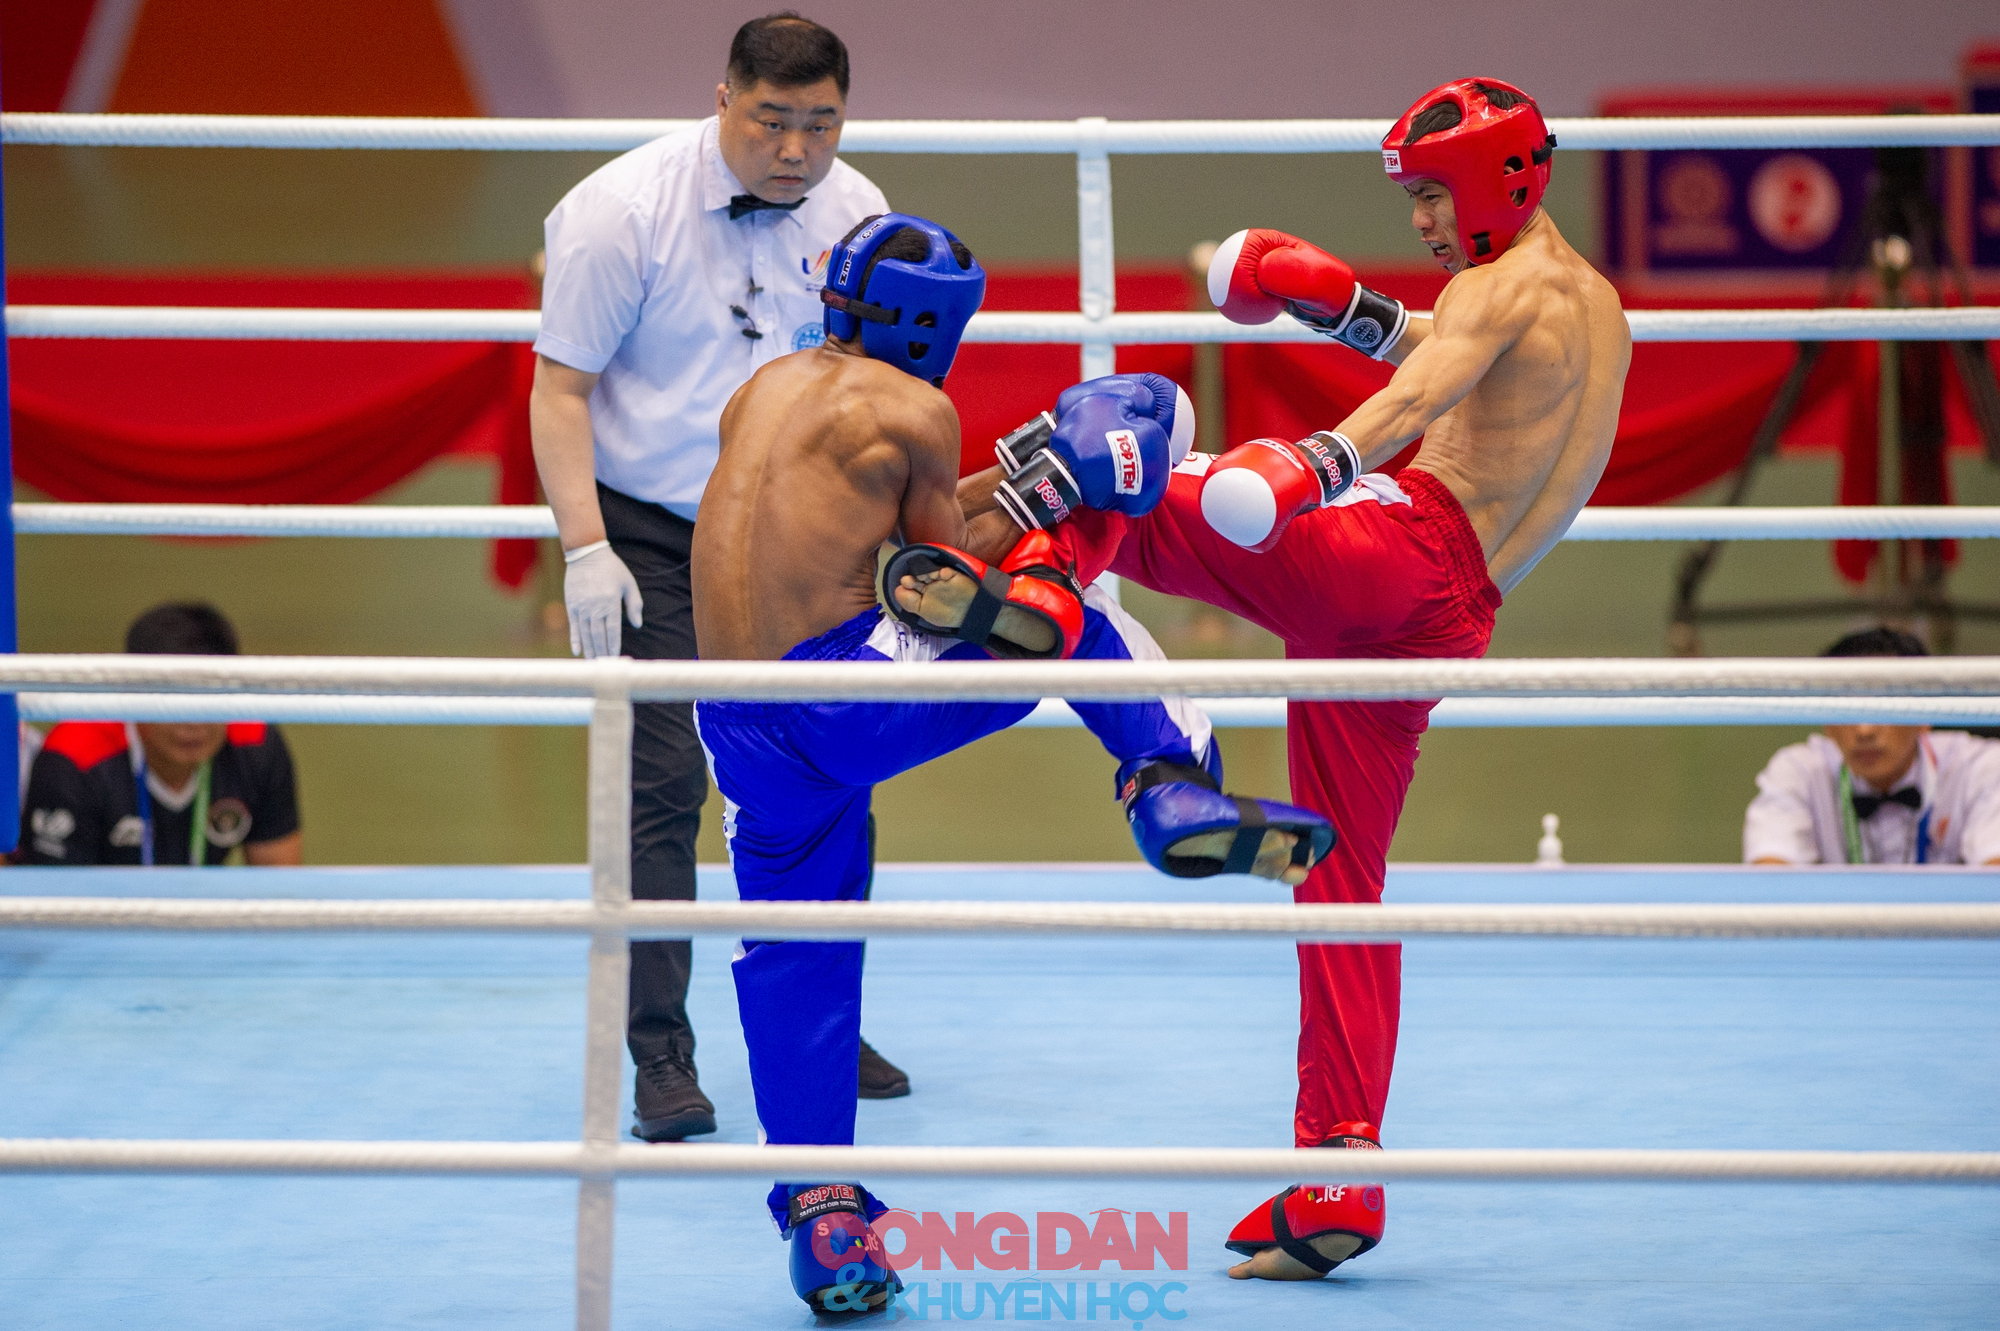 Hình ảnh: kịch tính tuyển kickboxing Việt Nam giành 5 HCV trong đêm chung kết  - Ảnh 2.